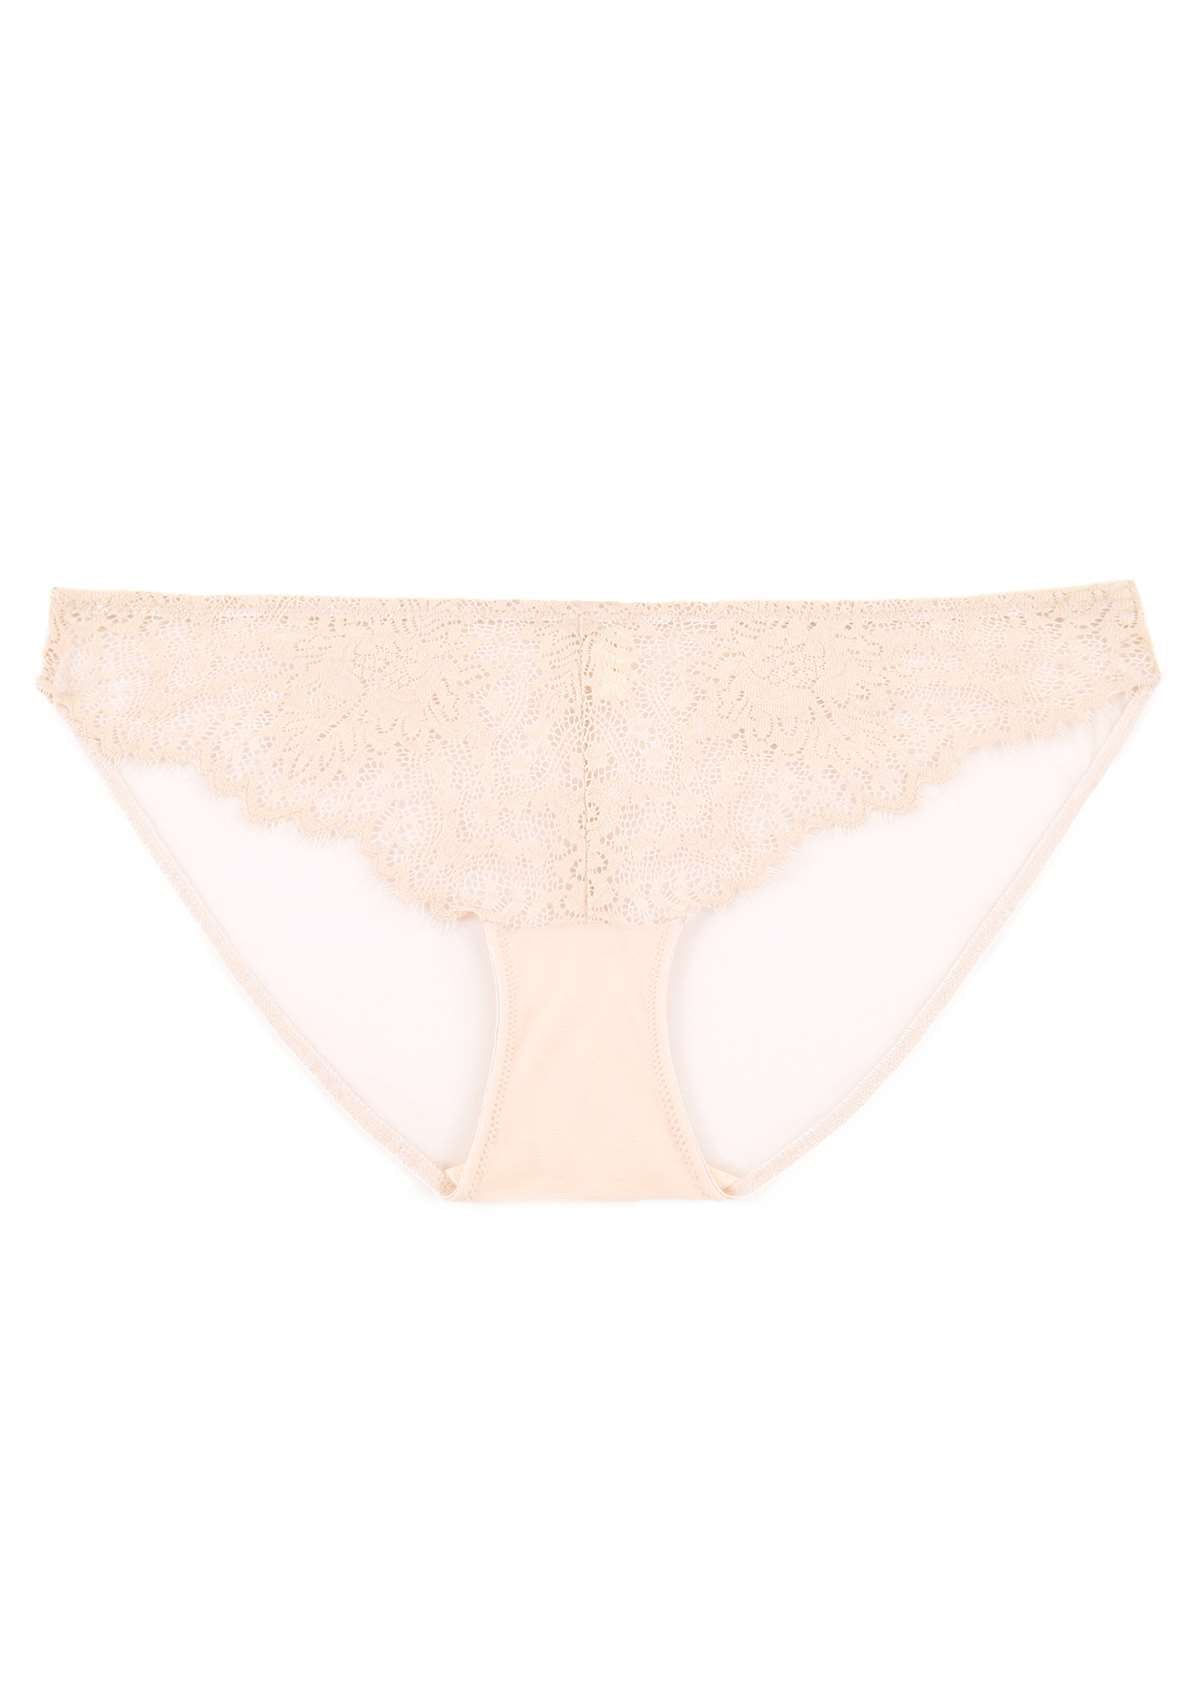 HSIA Sunflower Exquisite Lace Bikini Underwear - XXXL / White